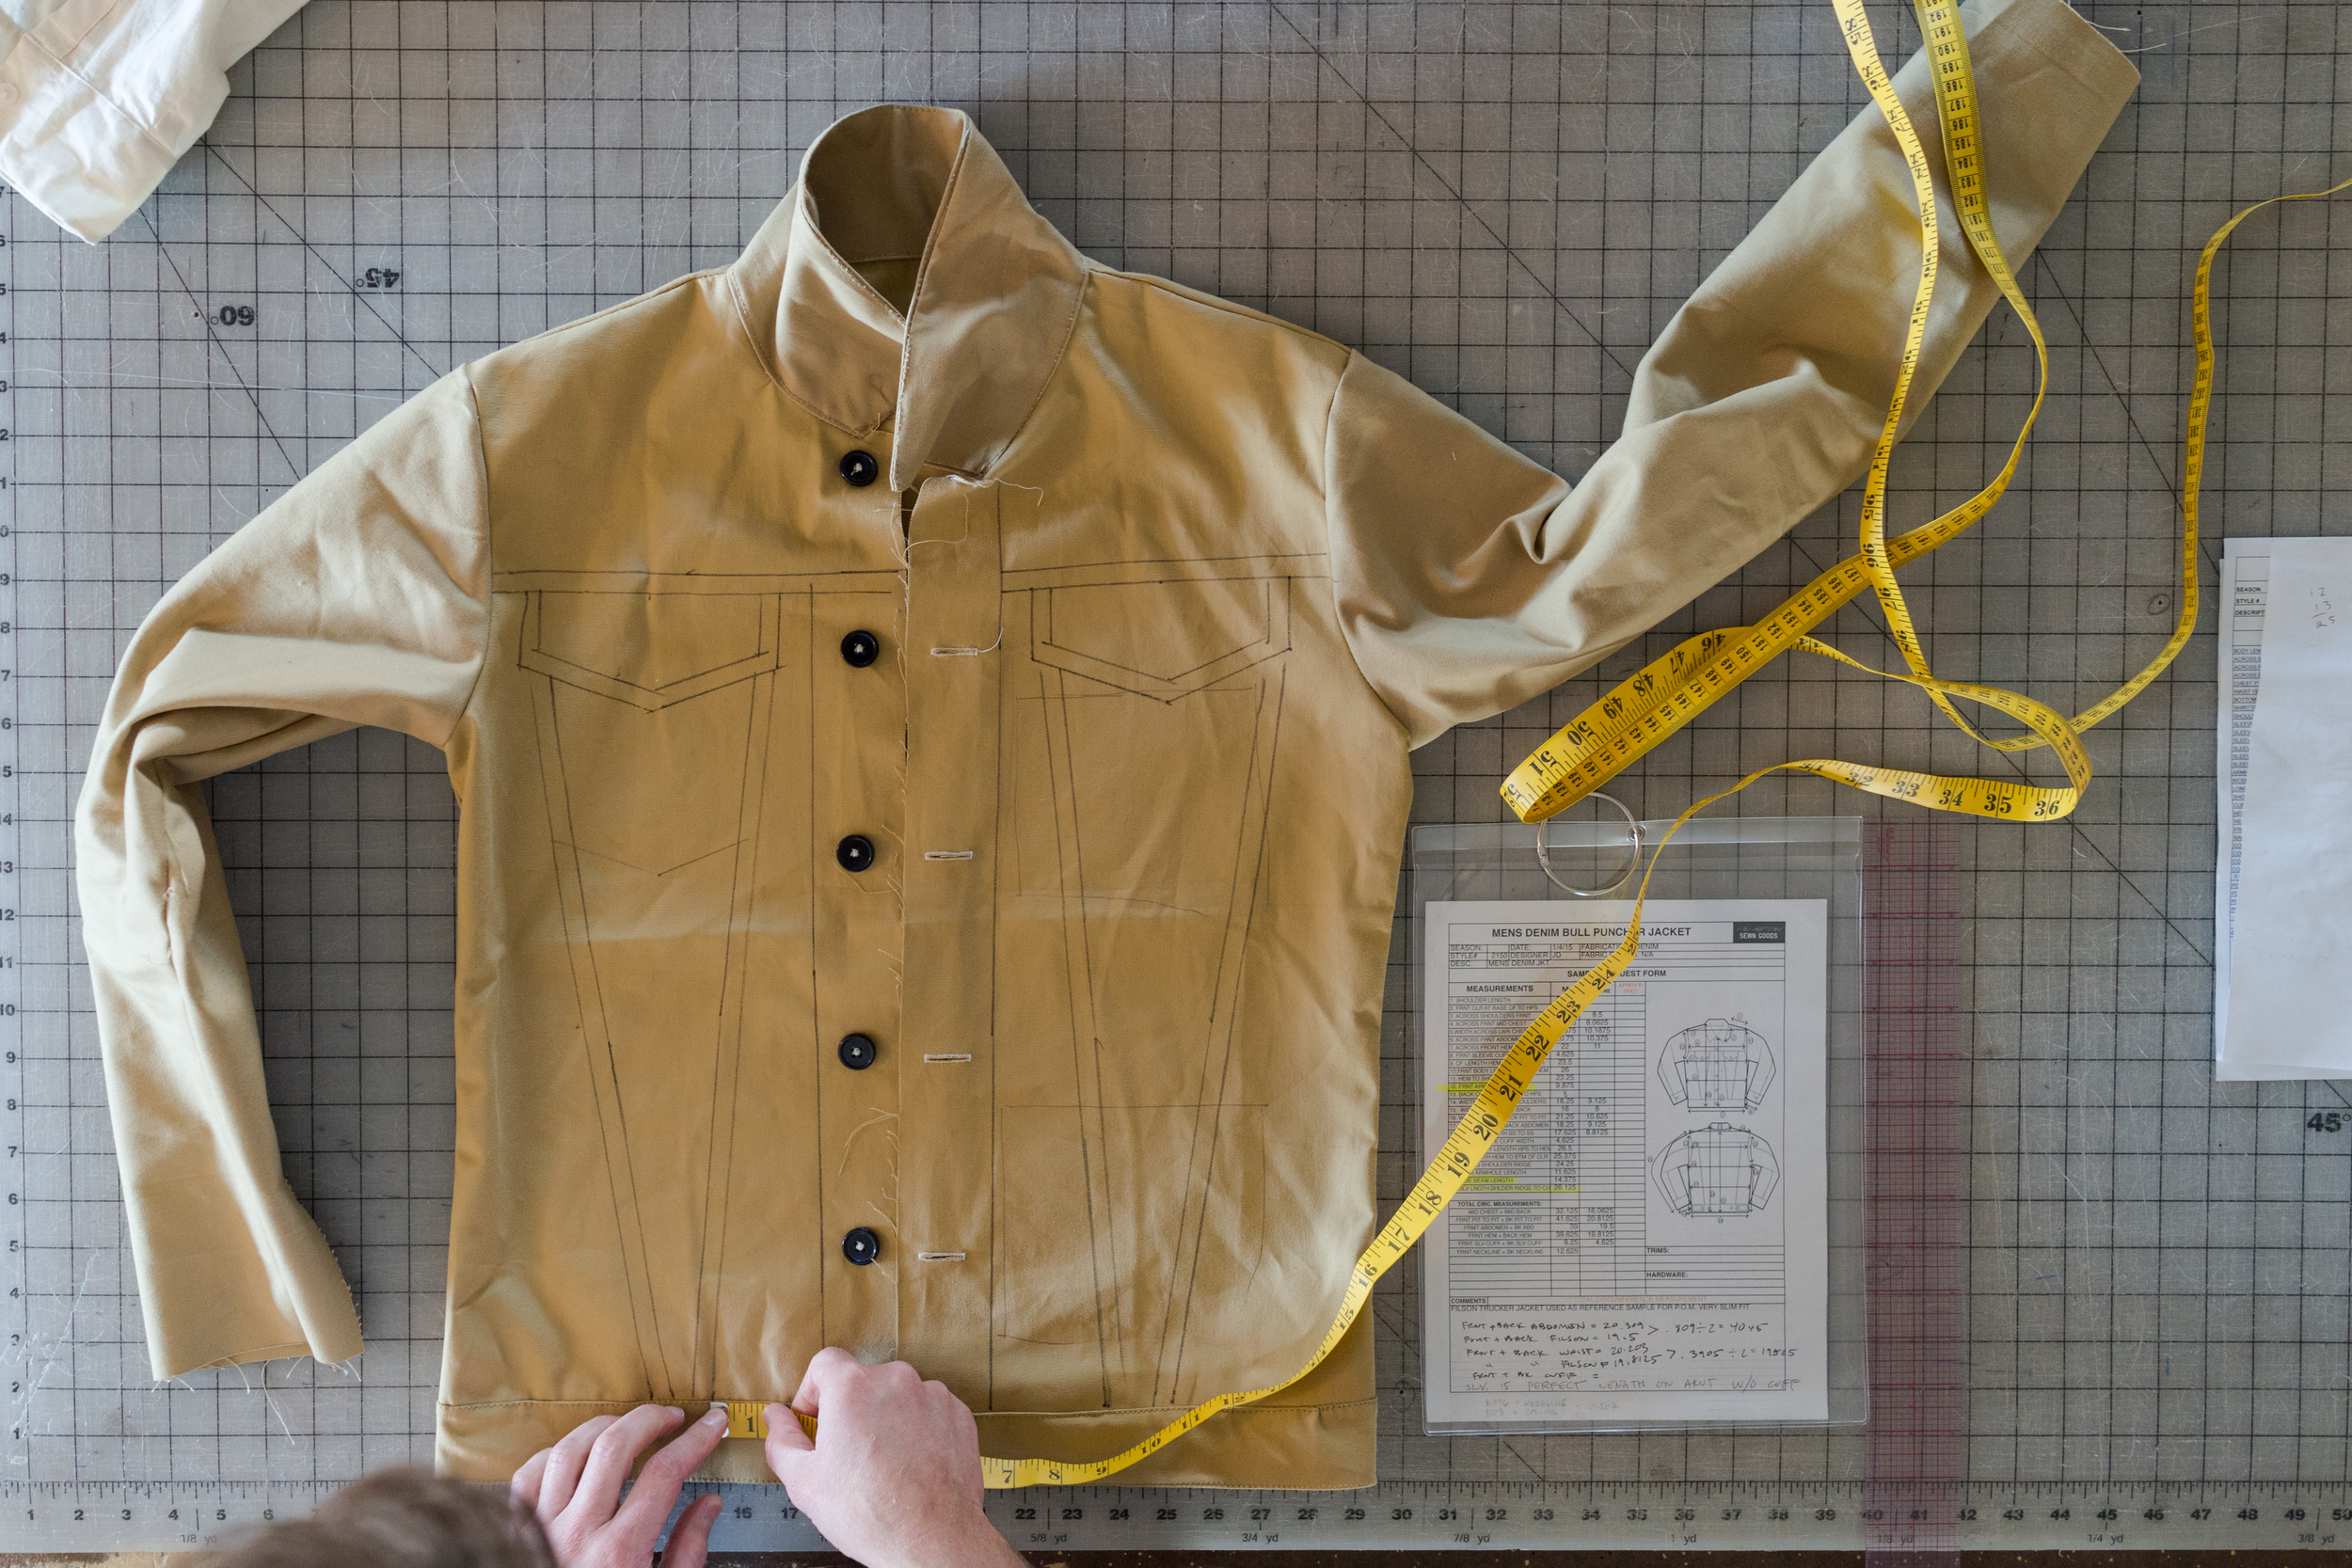 sewn-goods-design-development-jackets-outerwear